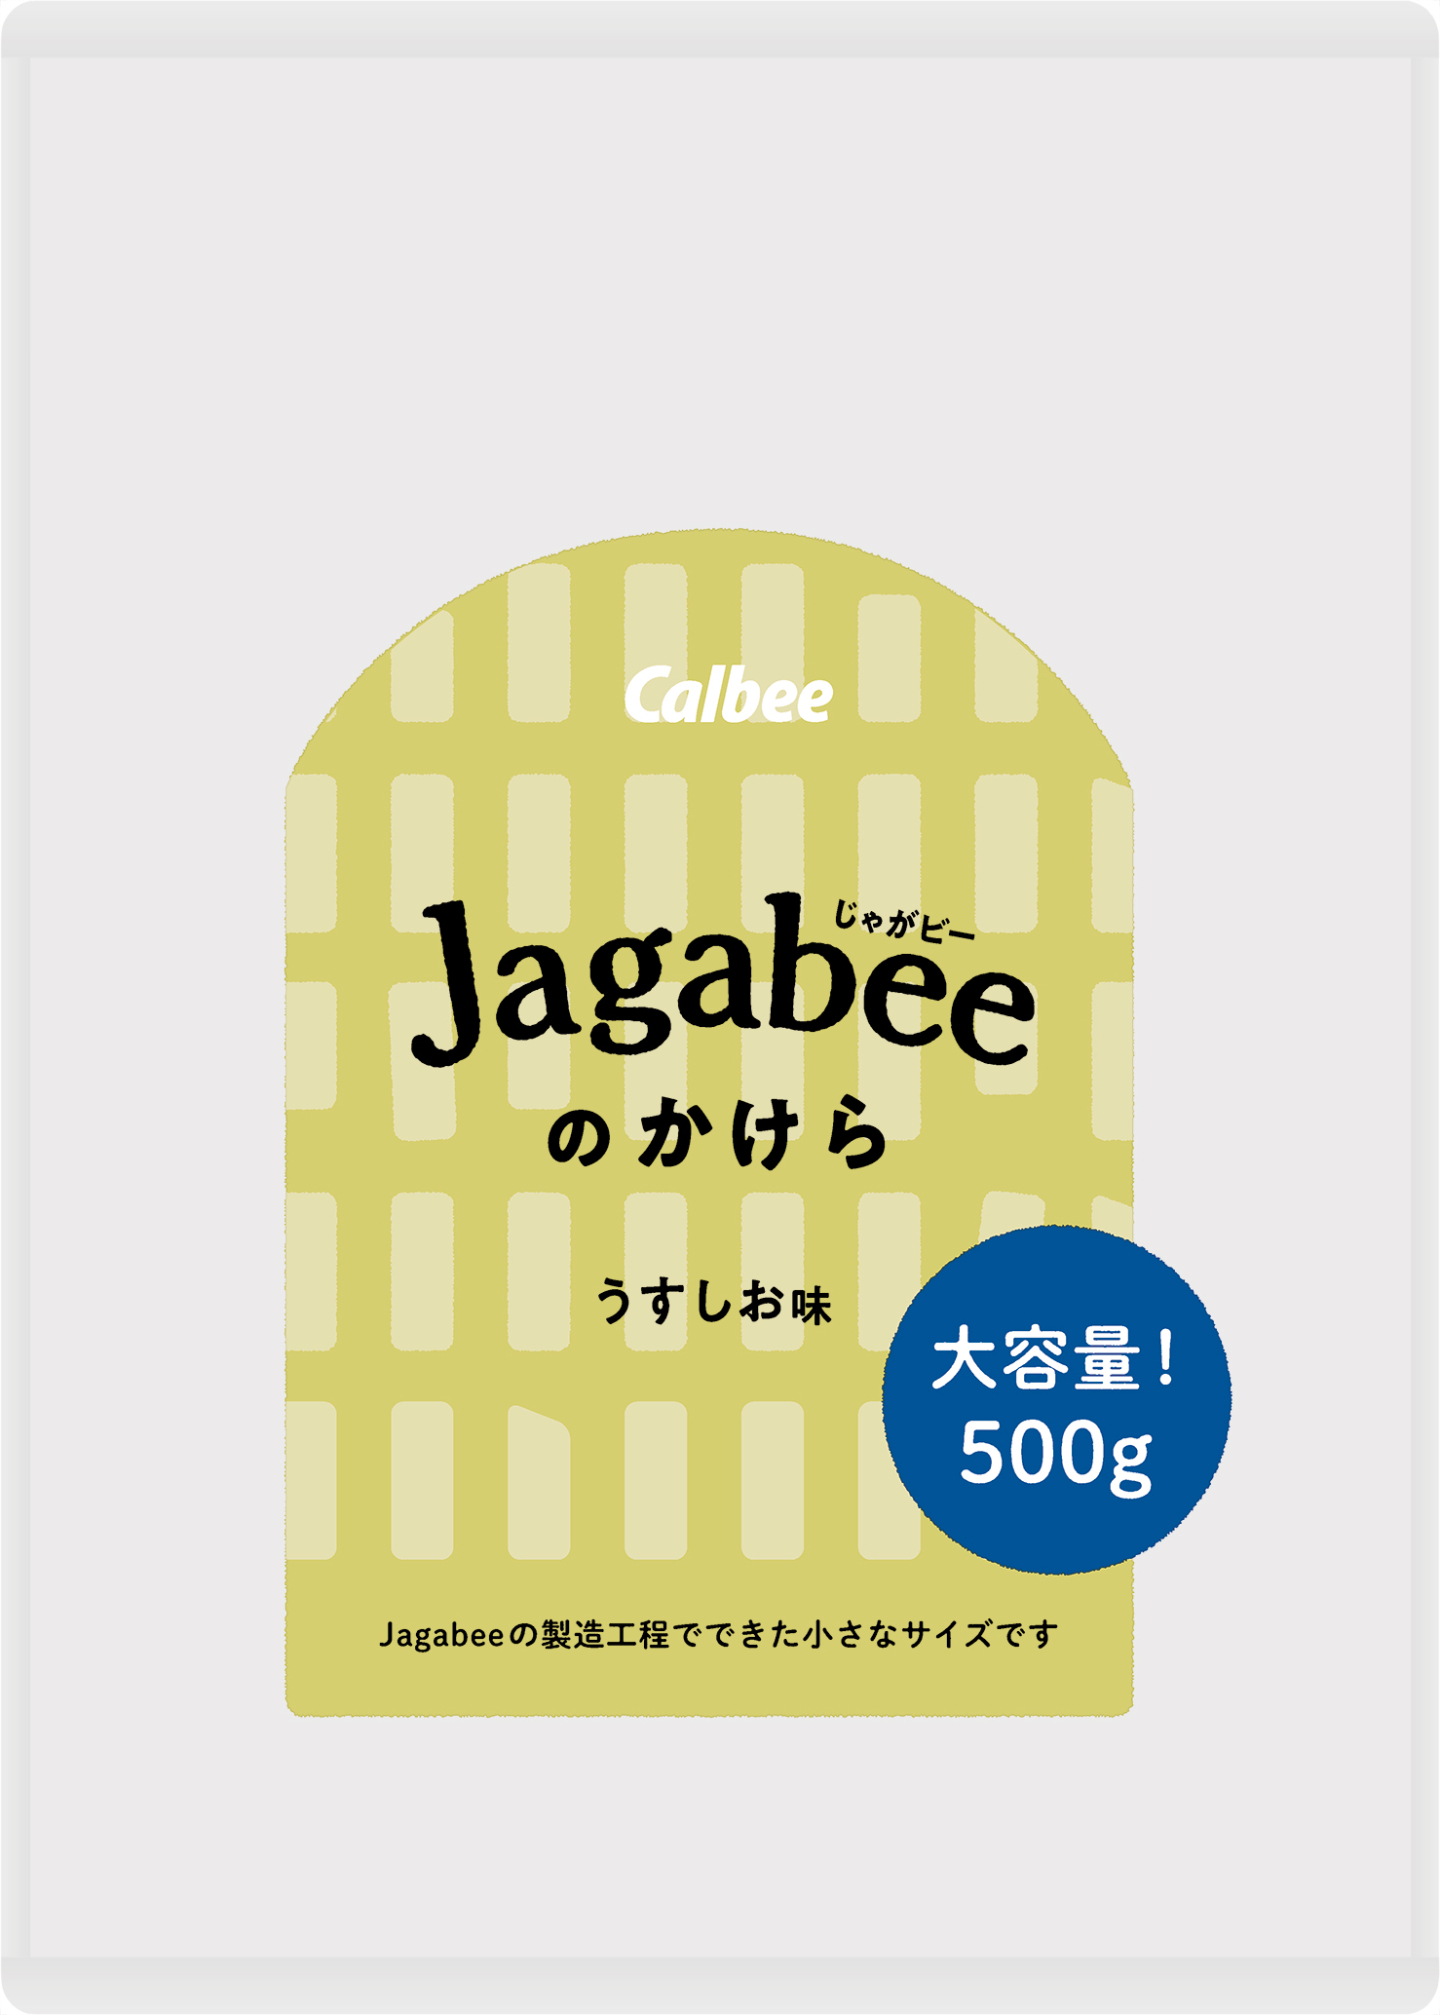 フードロス削減！短いかけらを活用「Jagabeeのかけら うすしお味」カルビーマルシェ限定で発売